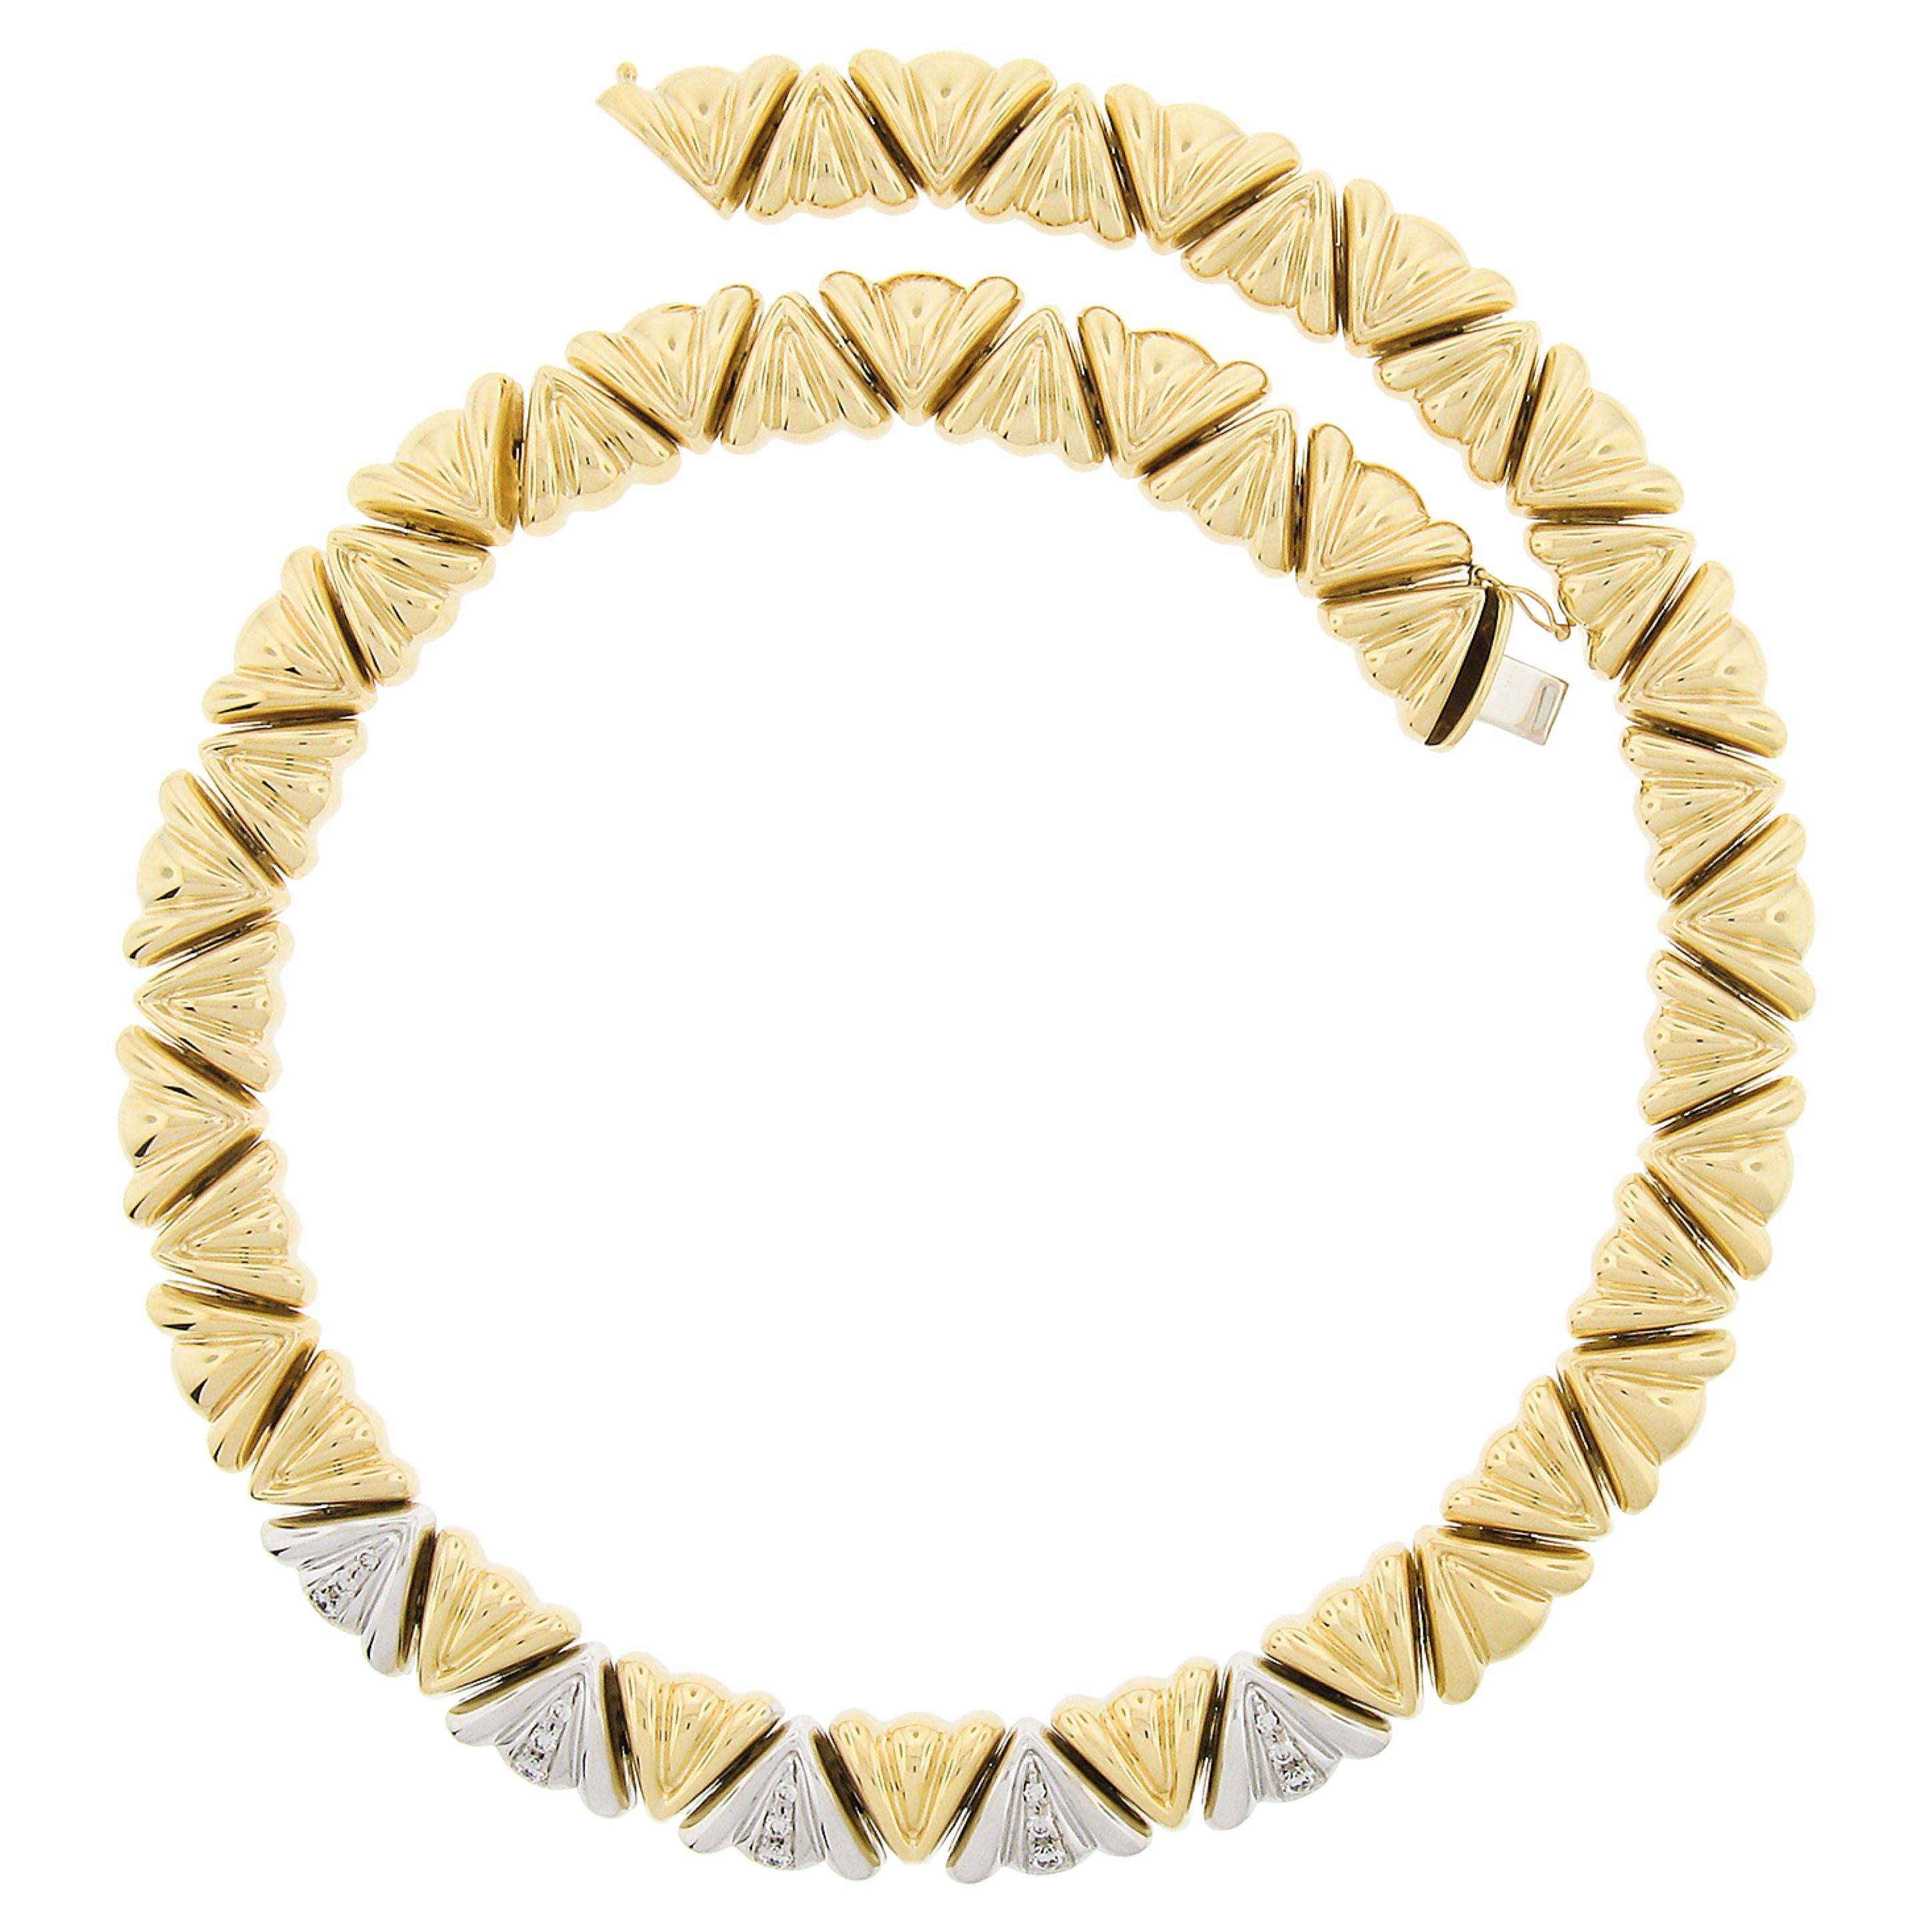 Chiampesan Italienisch 18K TT Gold Diamant Fancy Puffed Triangular Link 16"" Halskette